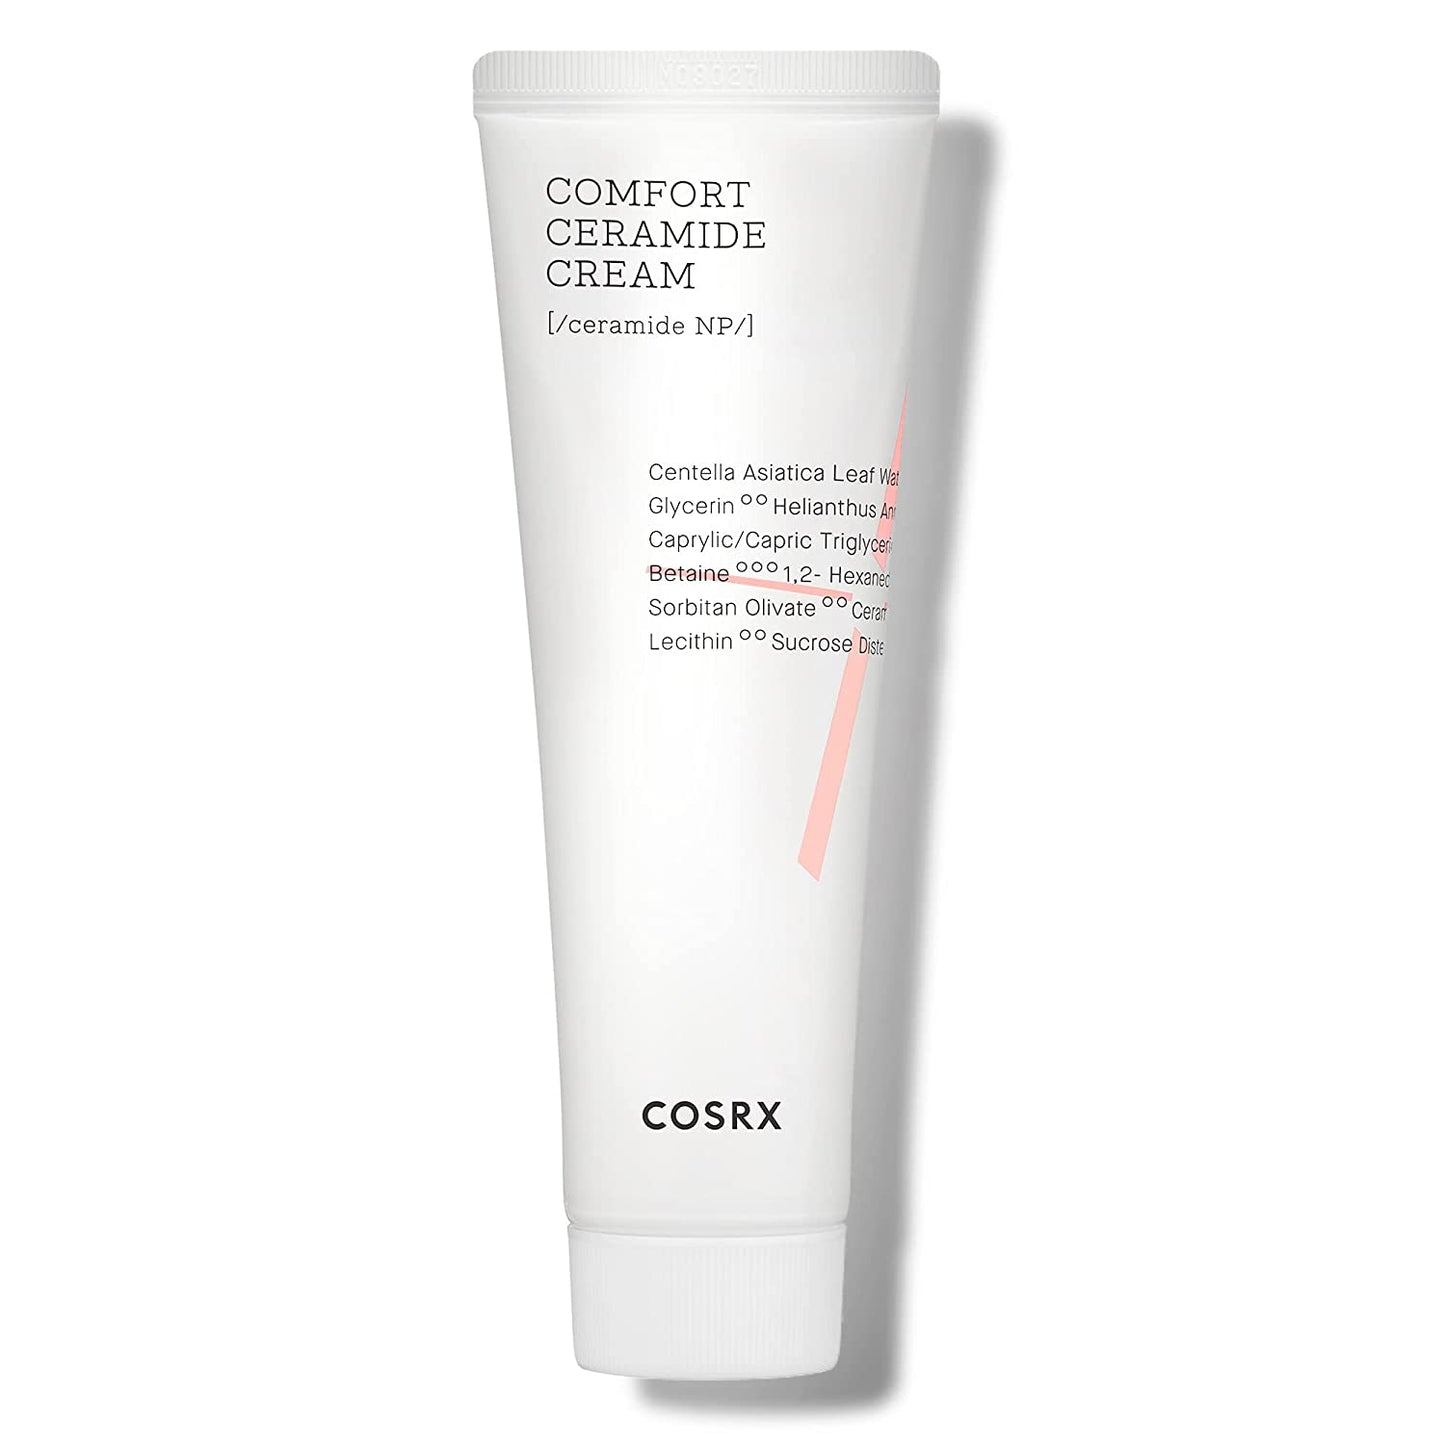 COSRX Balancium Comfort Ceramide Cream, 2.82 oz / 80g